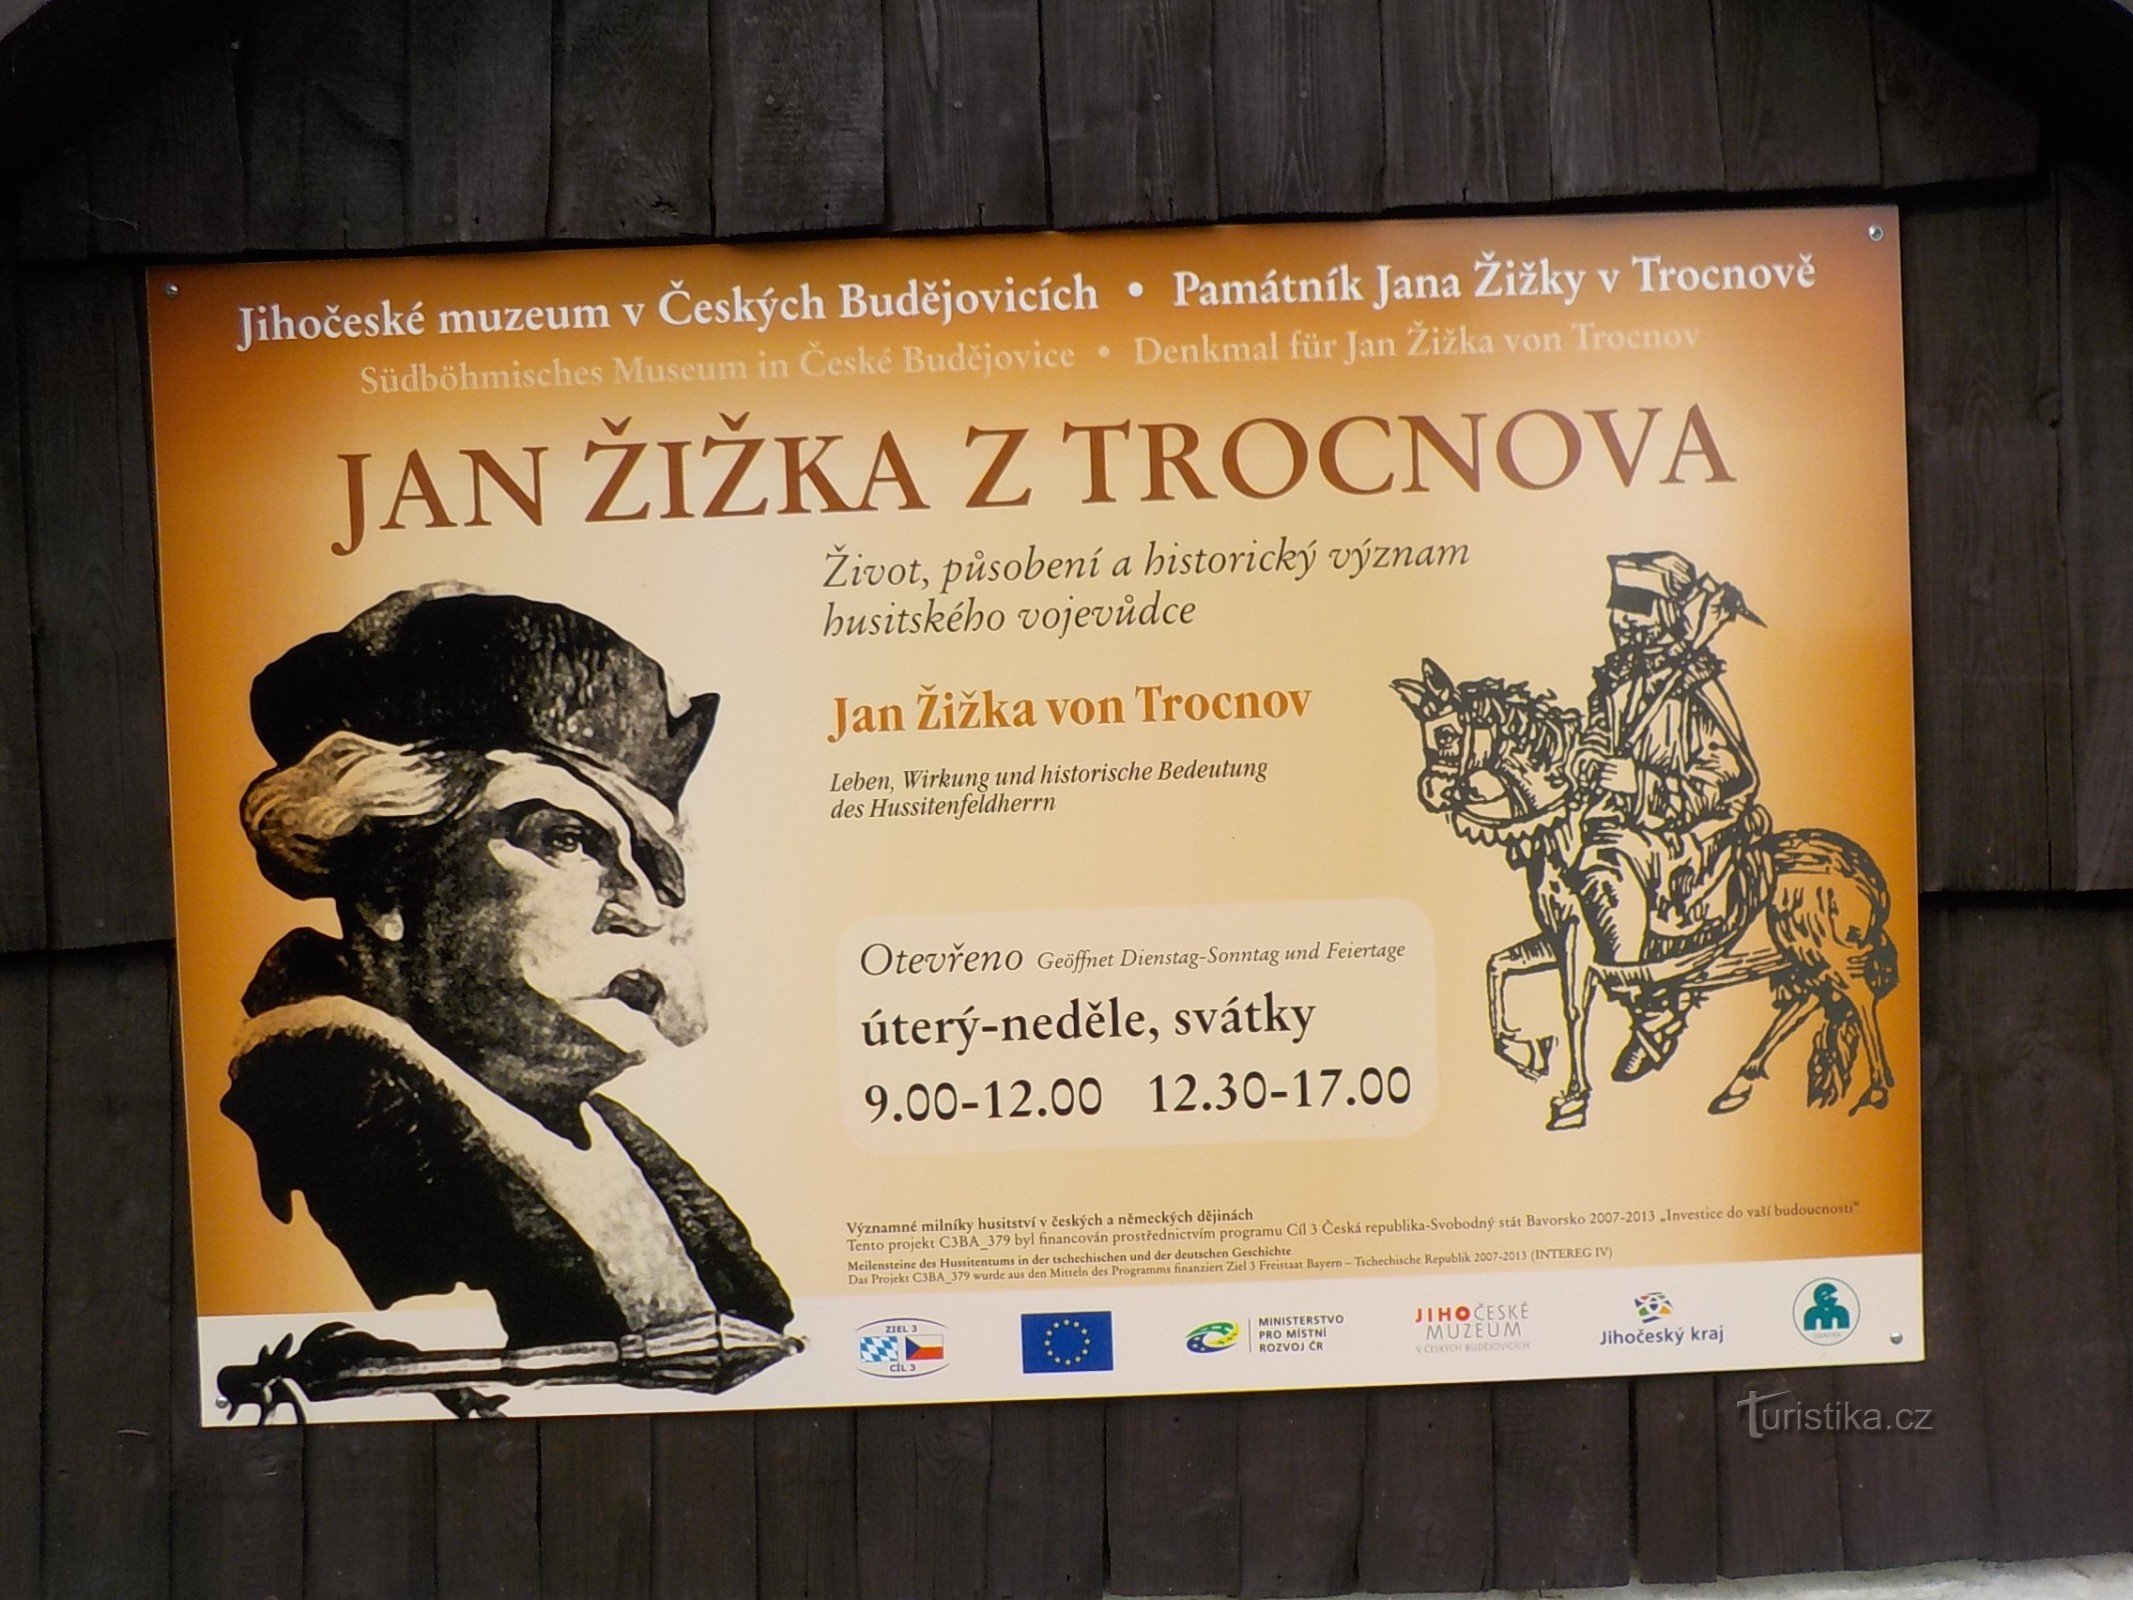 Hinter Jan Žižka und seinem Leben